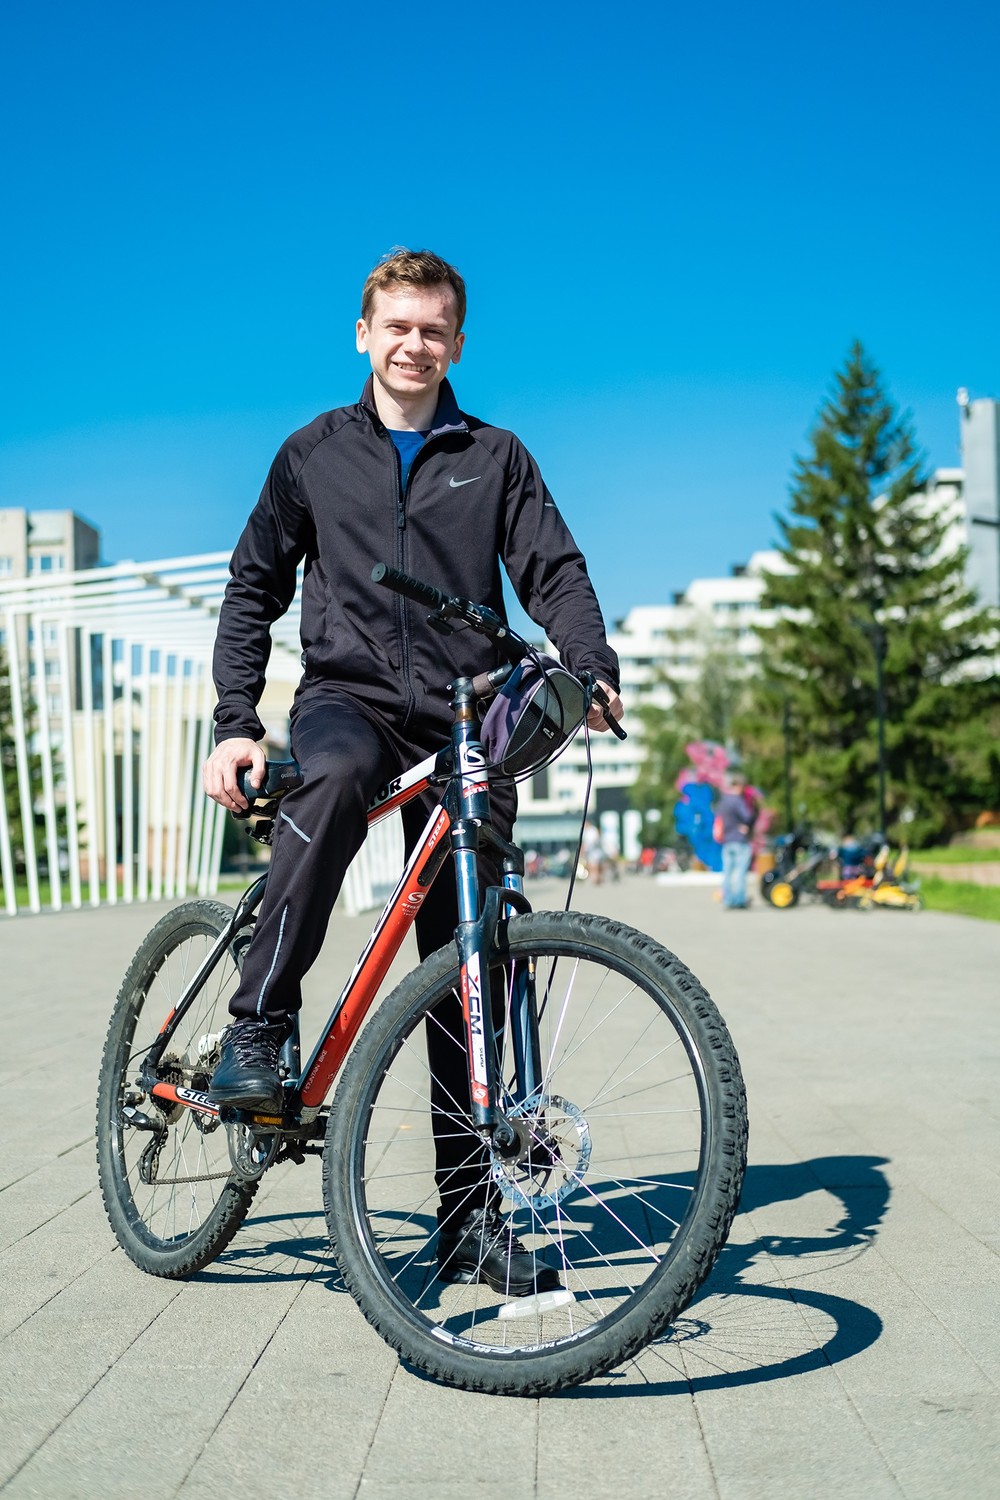 мужская фотосессиея фотограф Красноярск брутальный портрет спорт костюм велосипед татышев